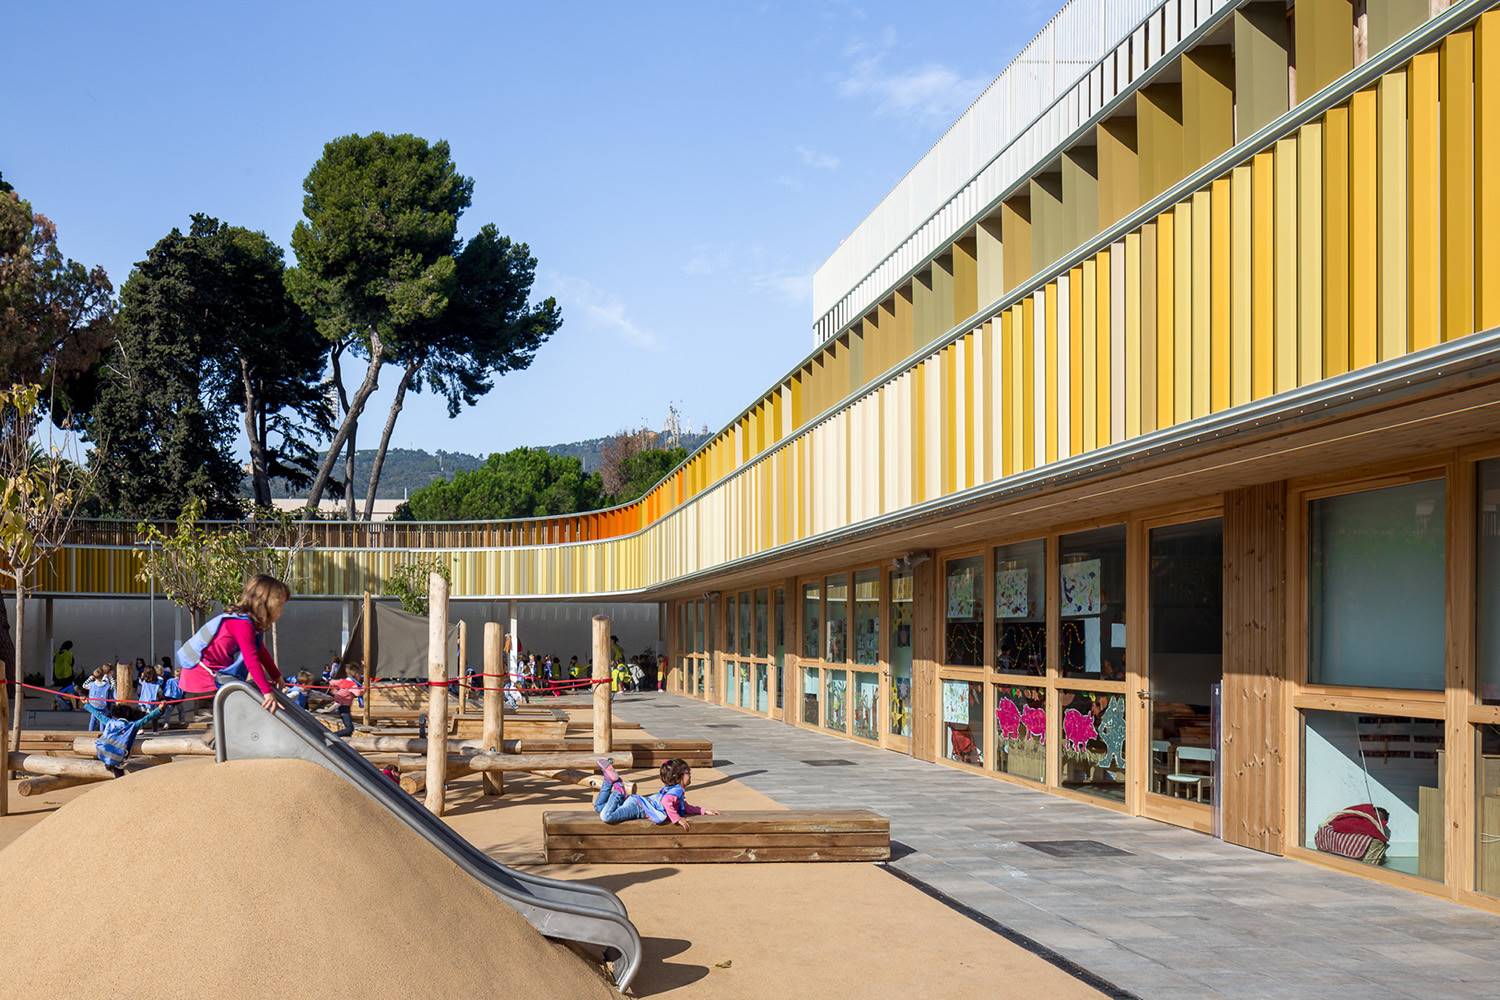 Lycée Français Maternelle, Barcelona (2017).
